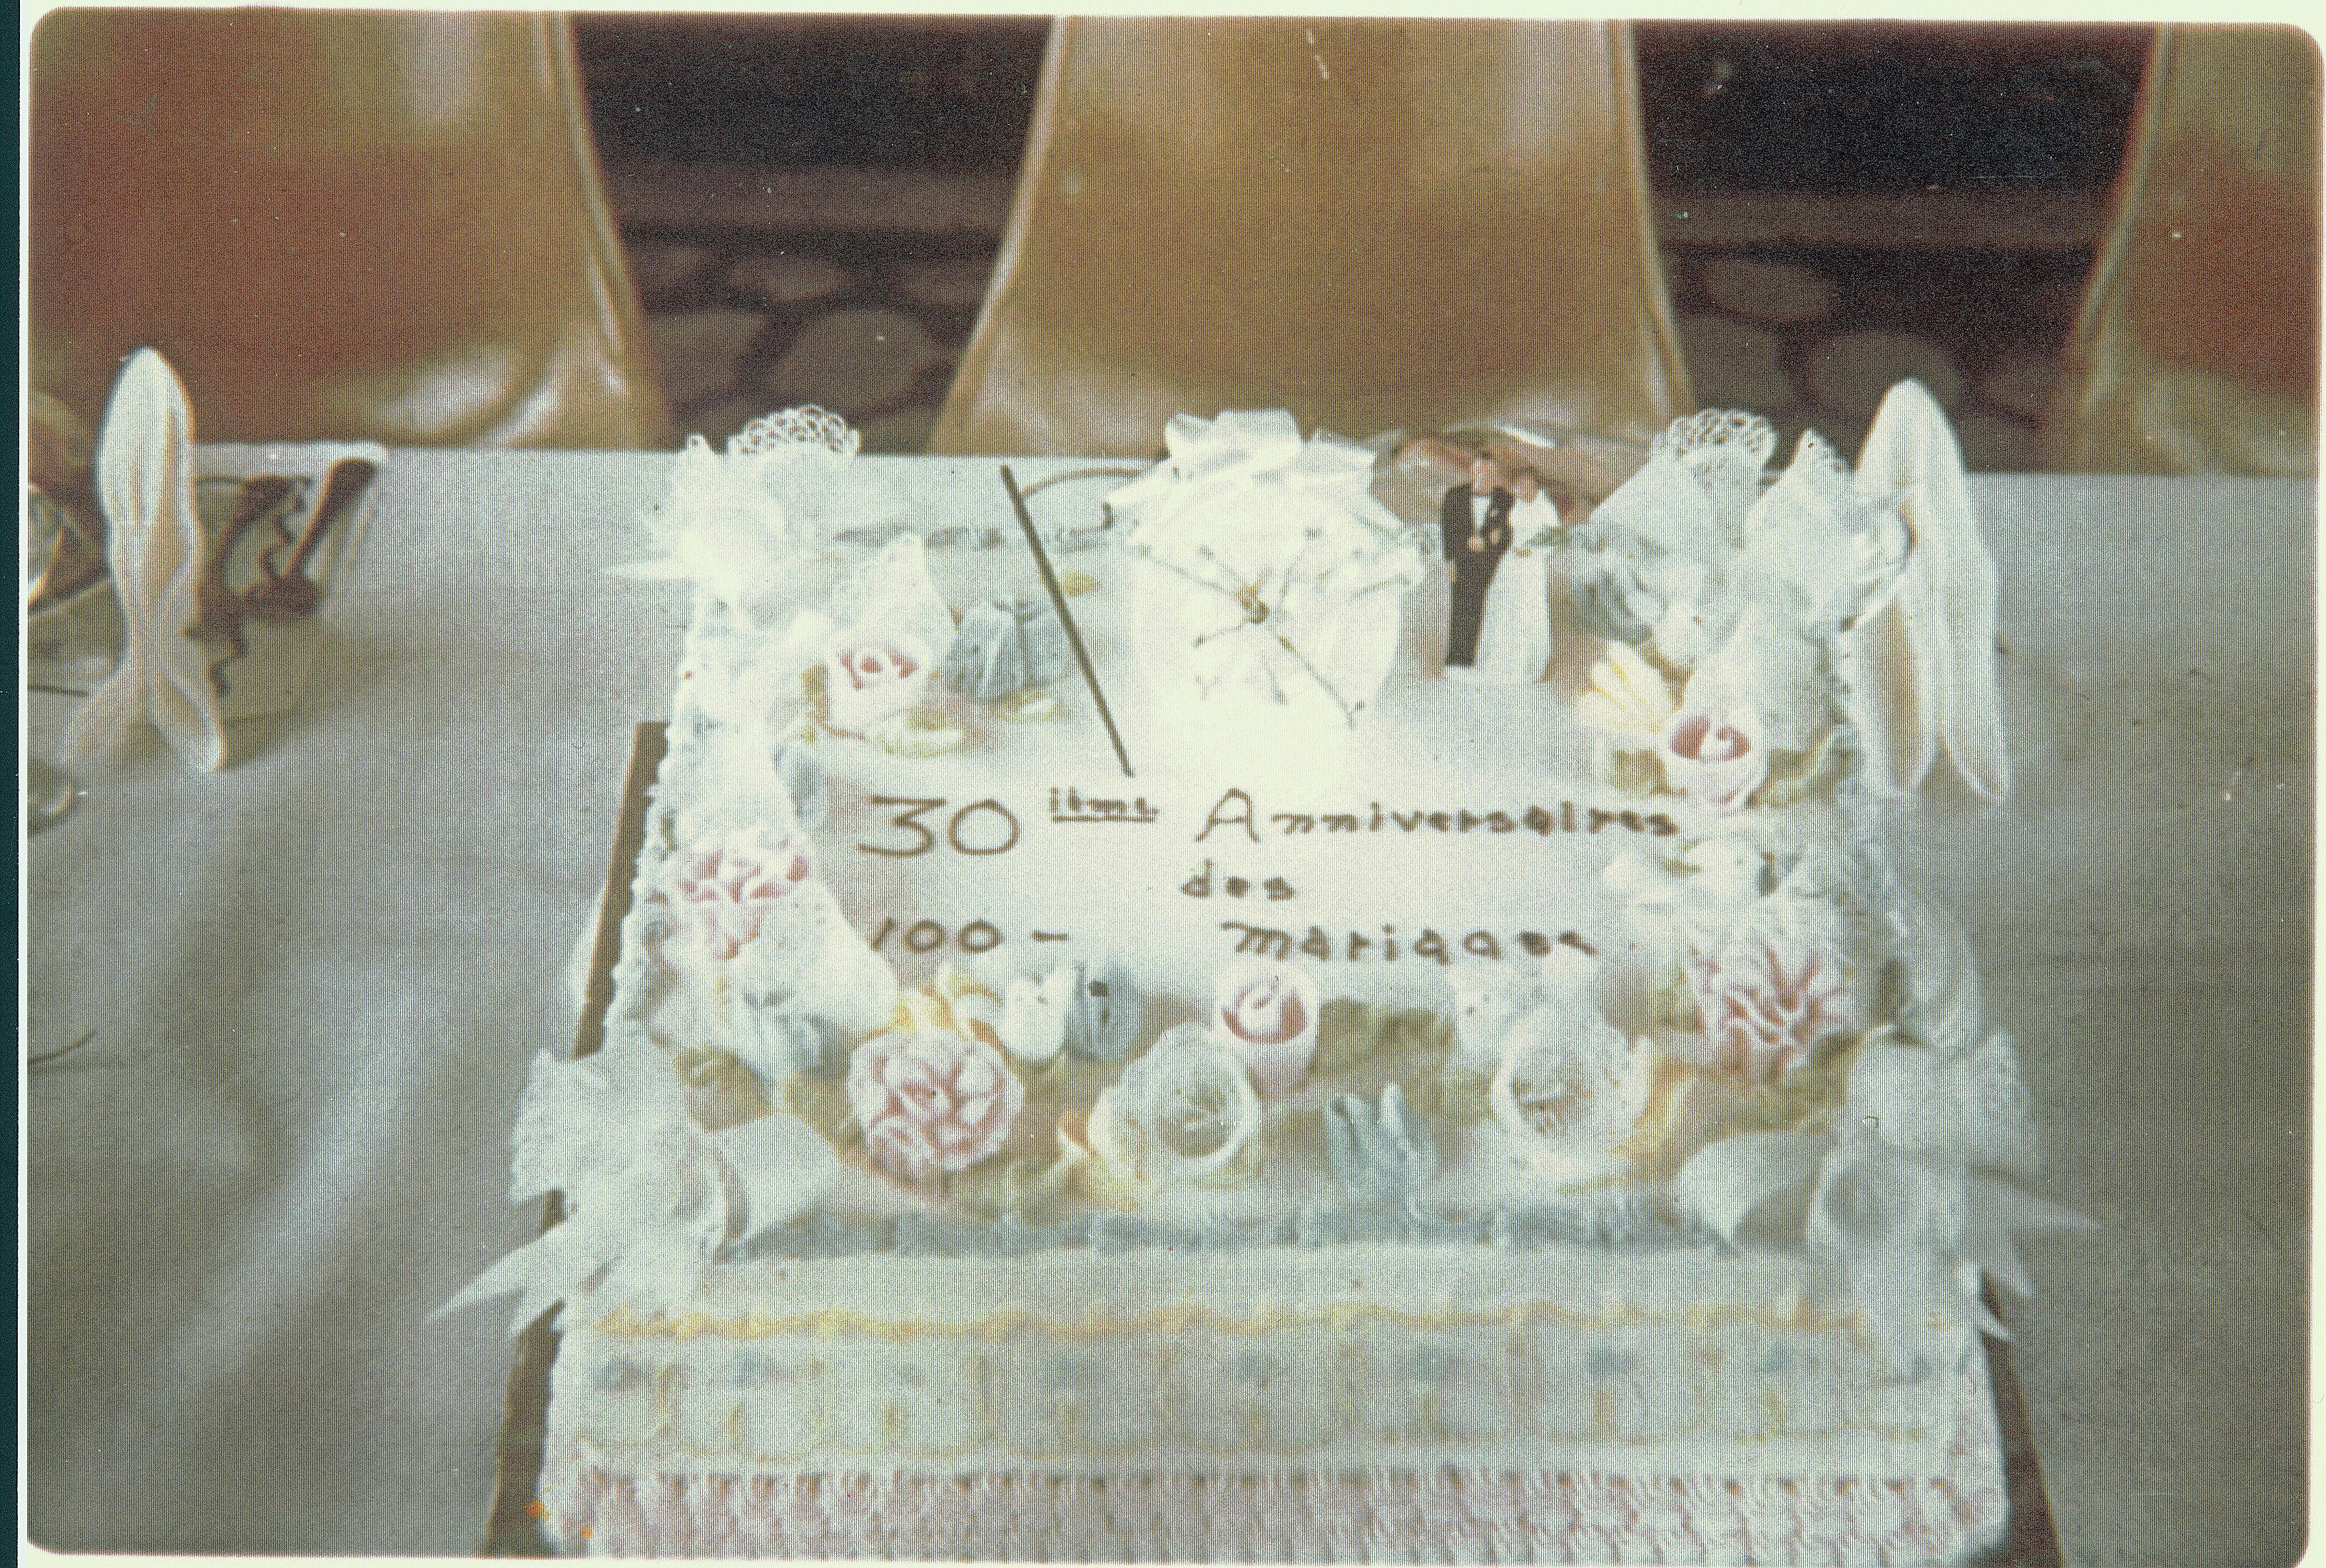 Gâteau du trentième anniversaire des 100 mariages jocistes.